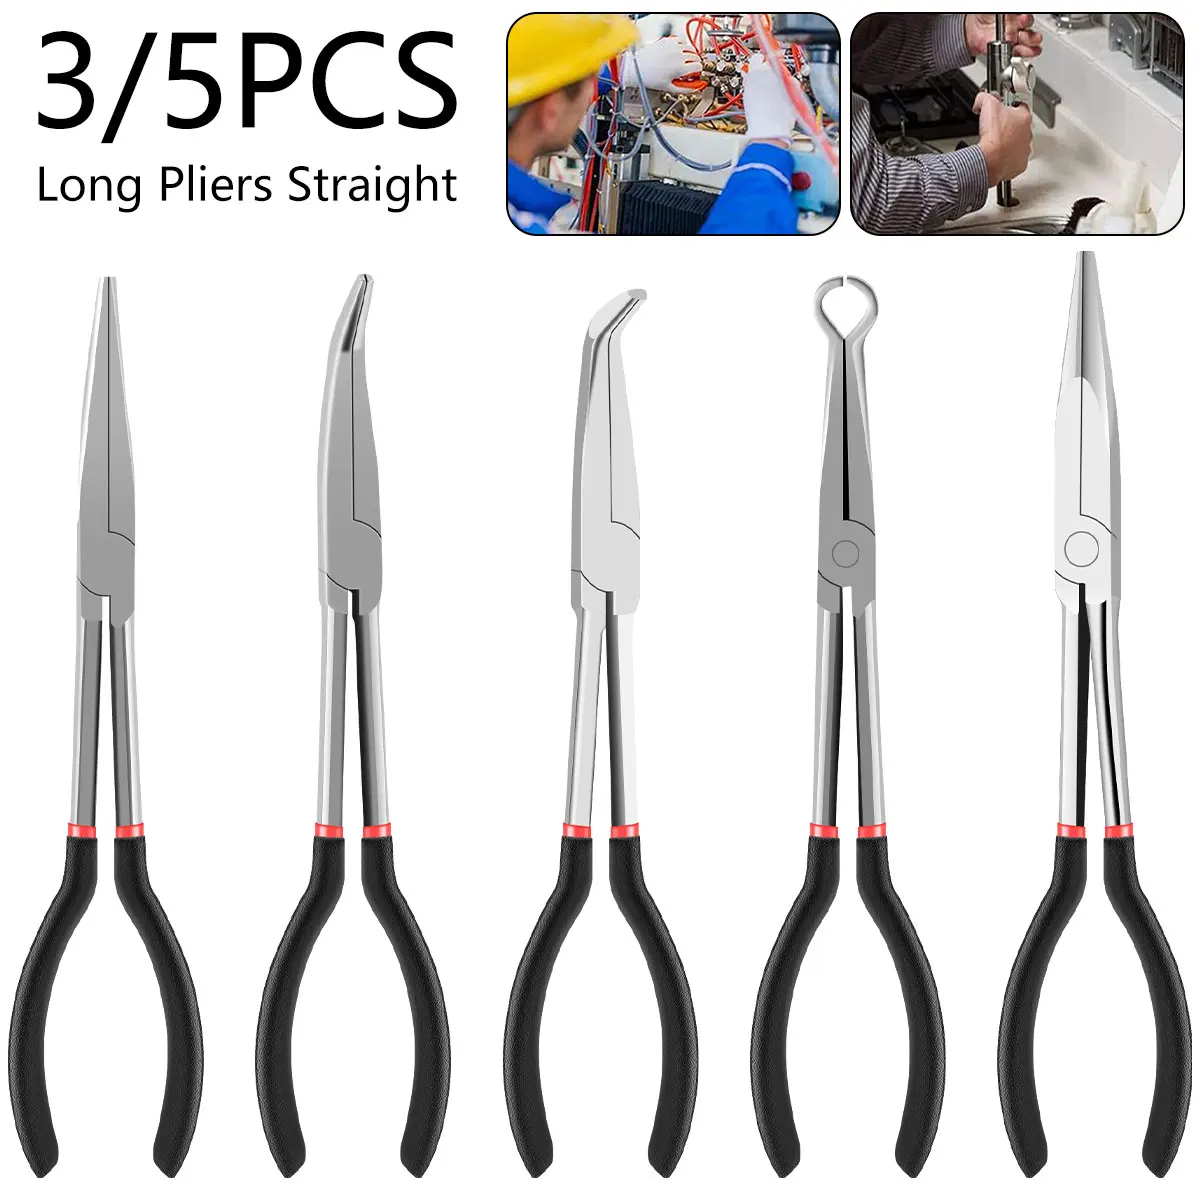 3/5Pcs Needle Nose Pliers Set 11 Inch Carbon Steel Long Reach